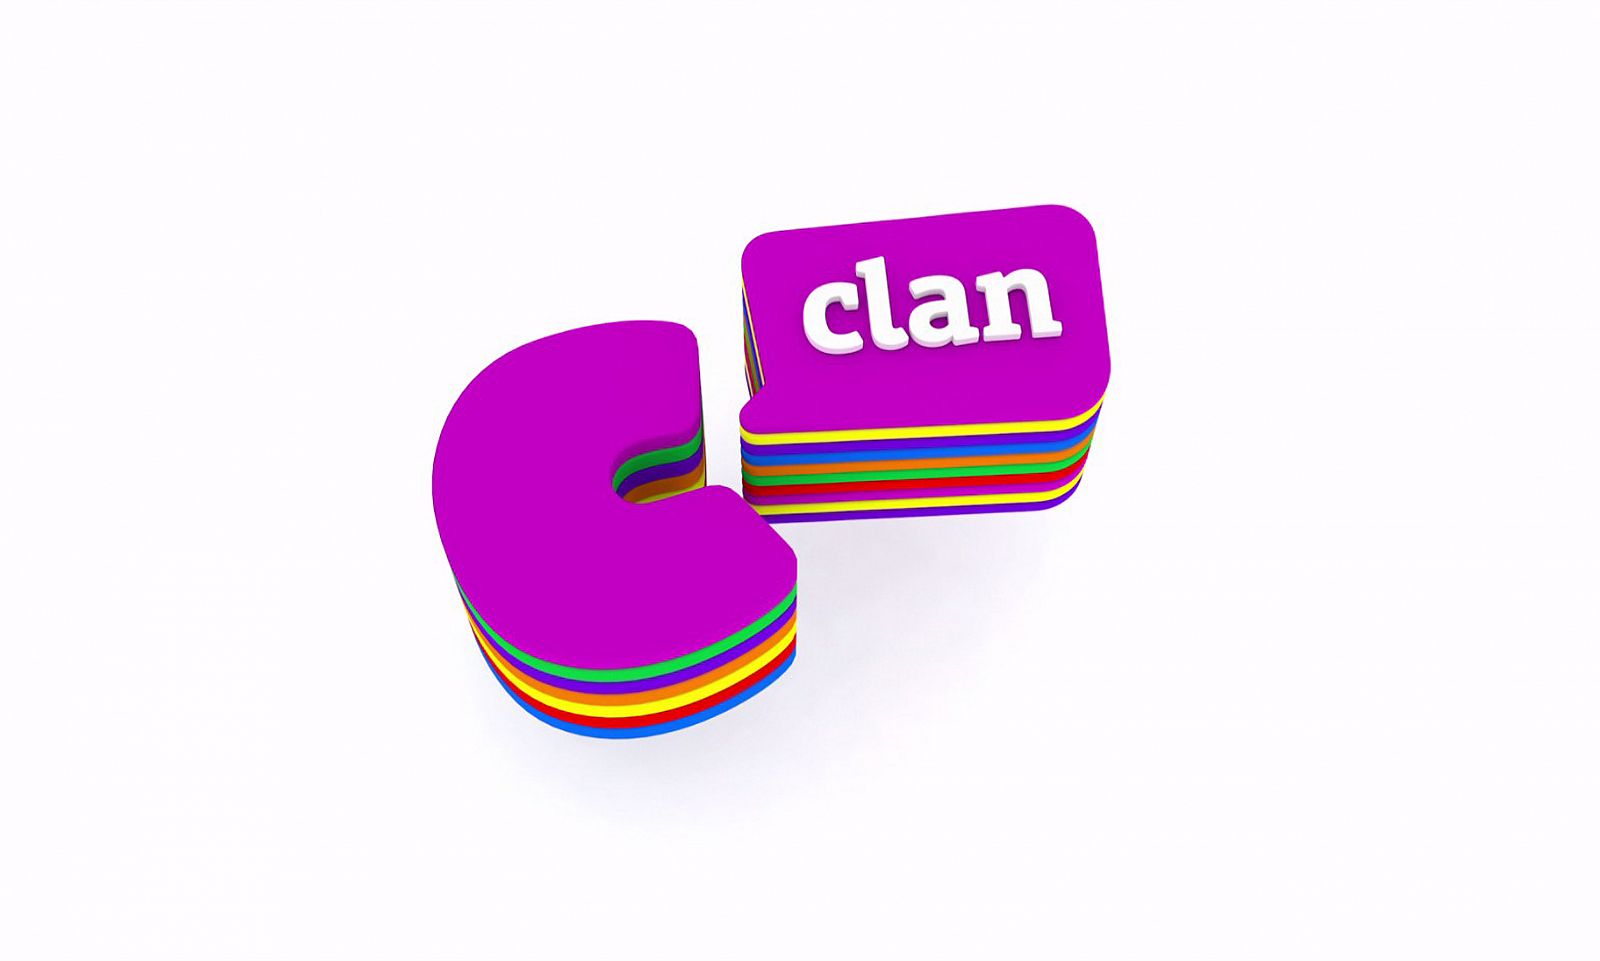 Club Clan, novedad en el canal infantil para este sábado